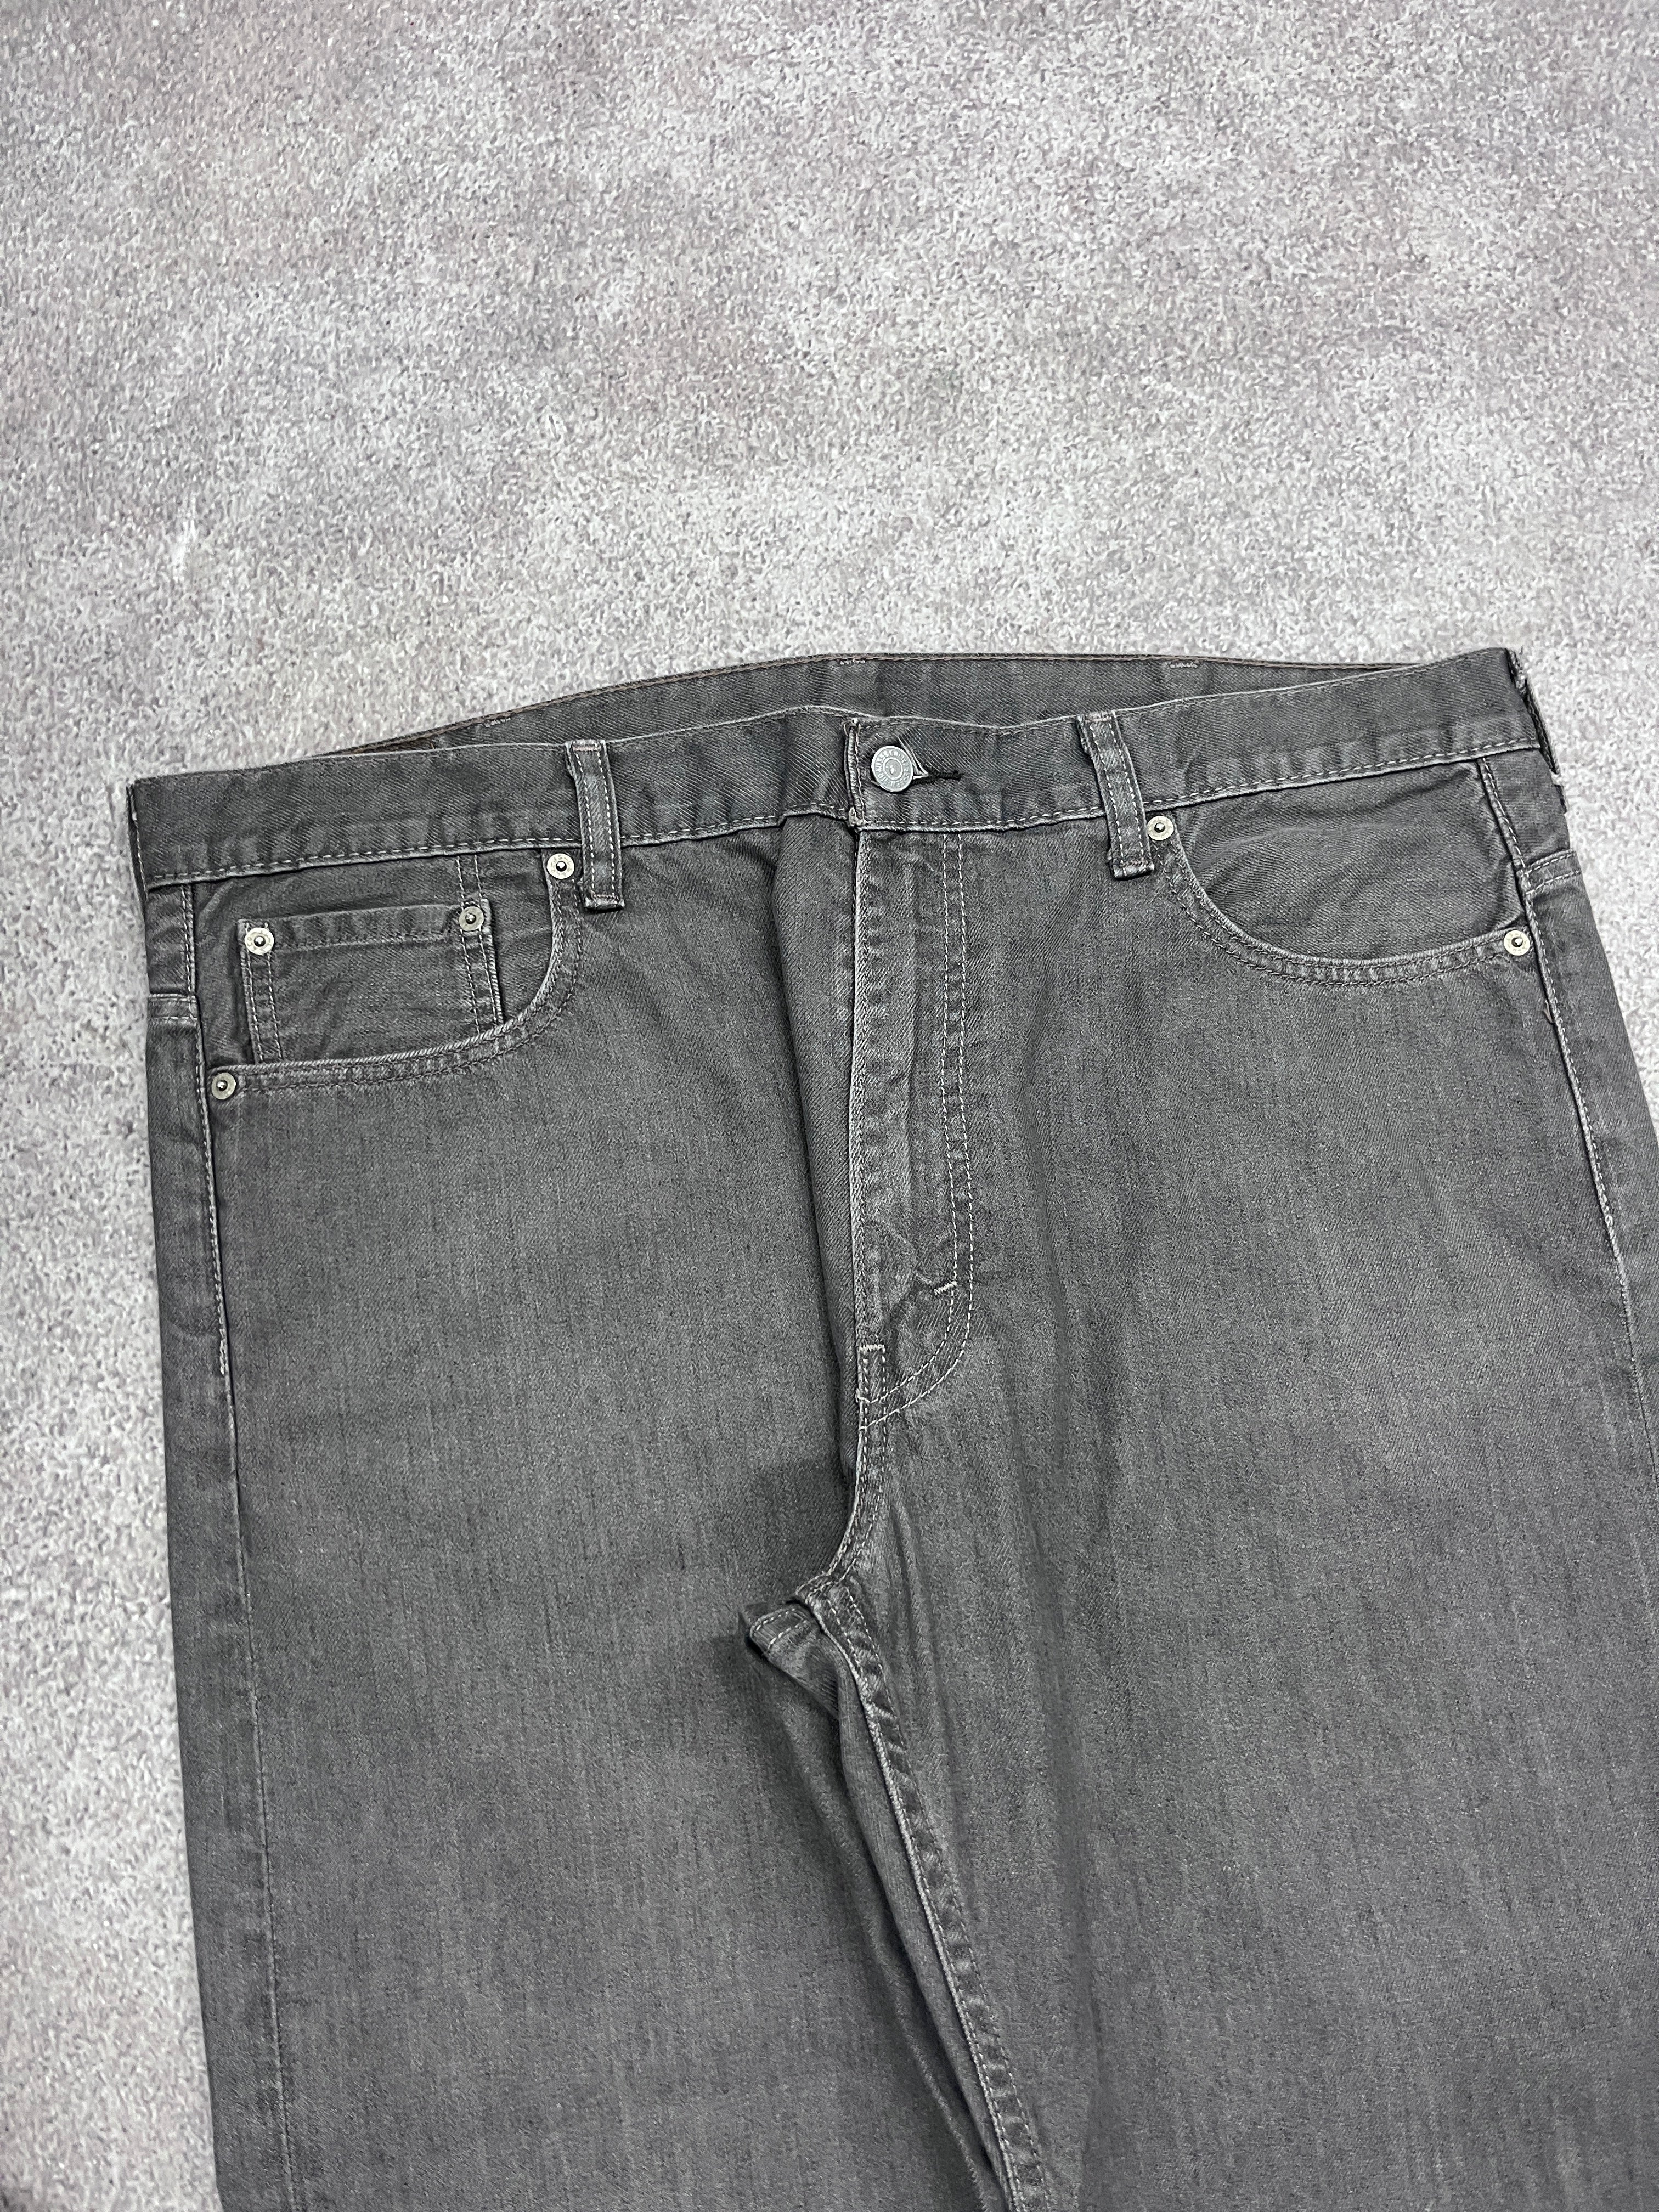 Vintage Levi 569 Denim Jeans // W38 L30 - RHAGHOUSE VINTAGE